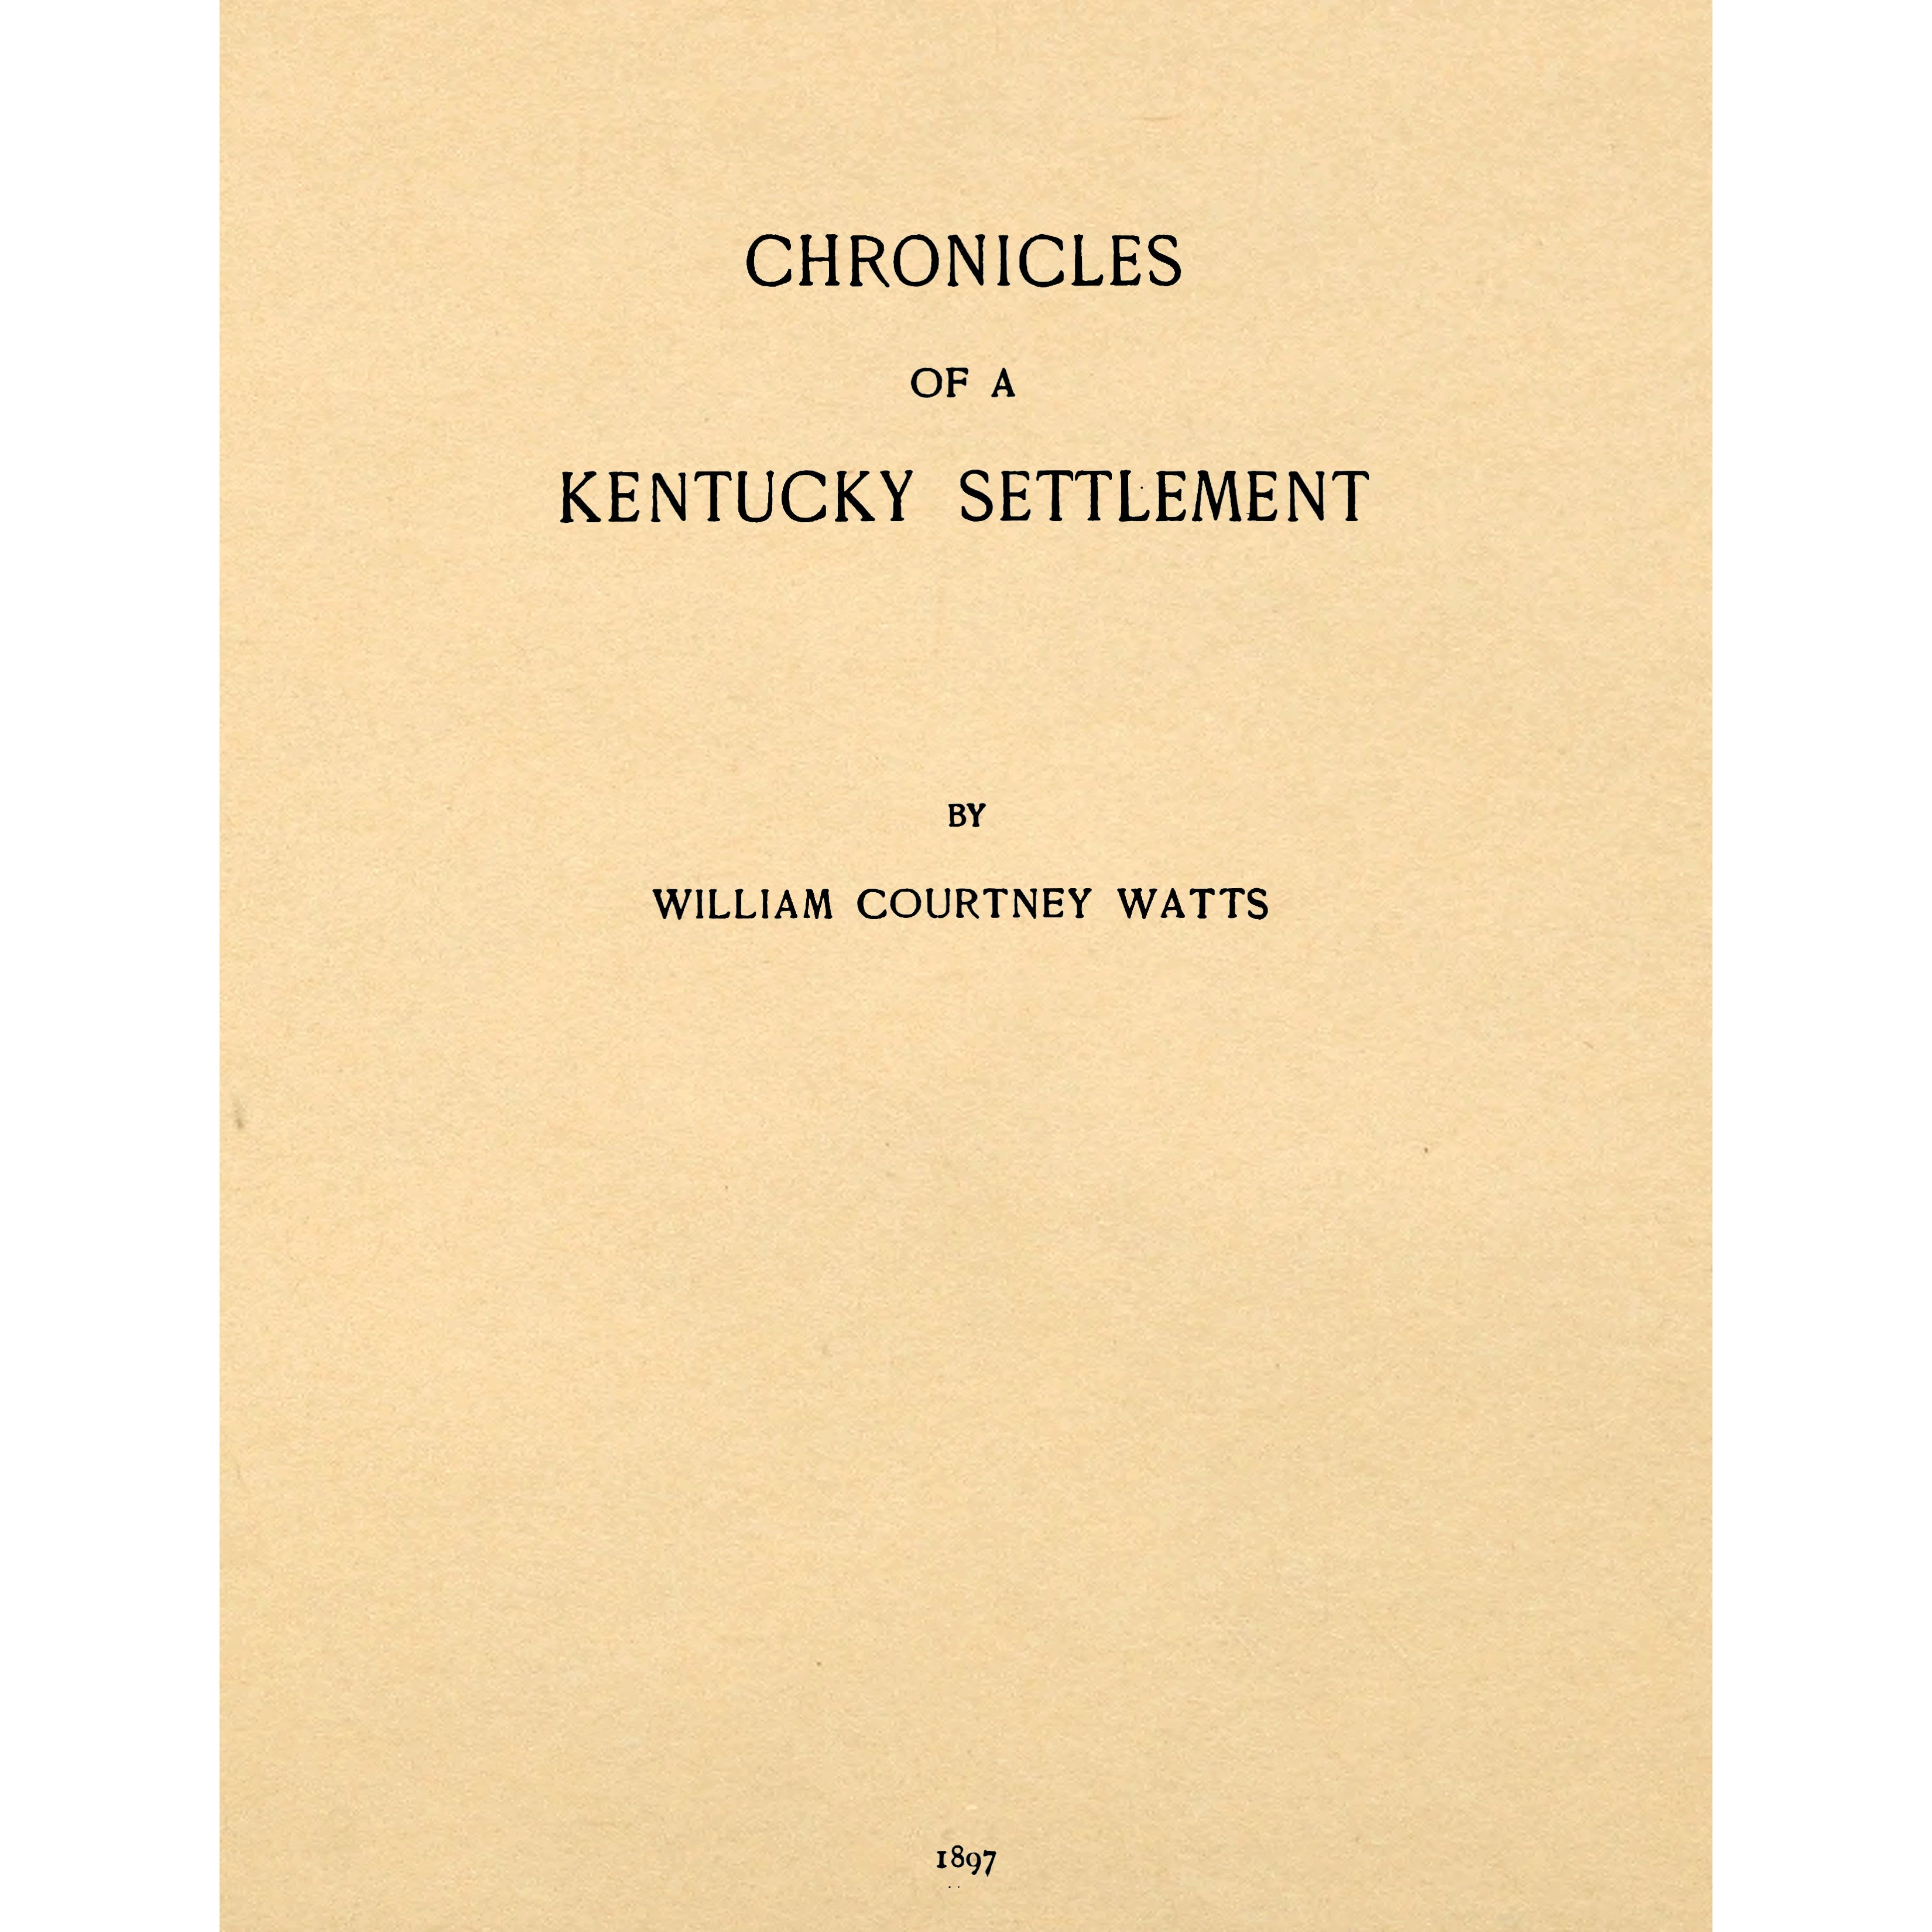 Chronicles of a Kentucky settlement